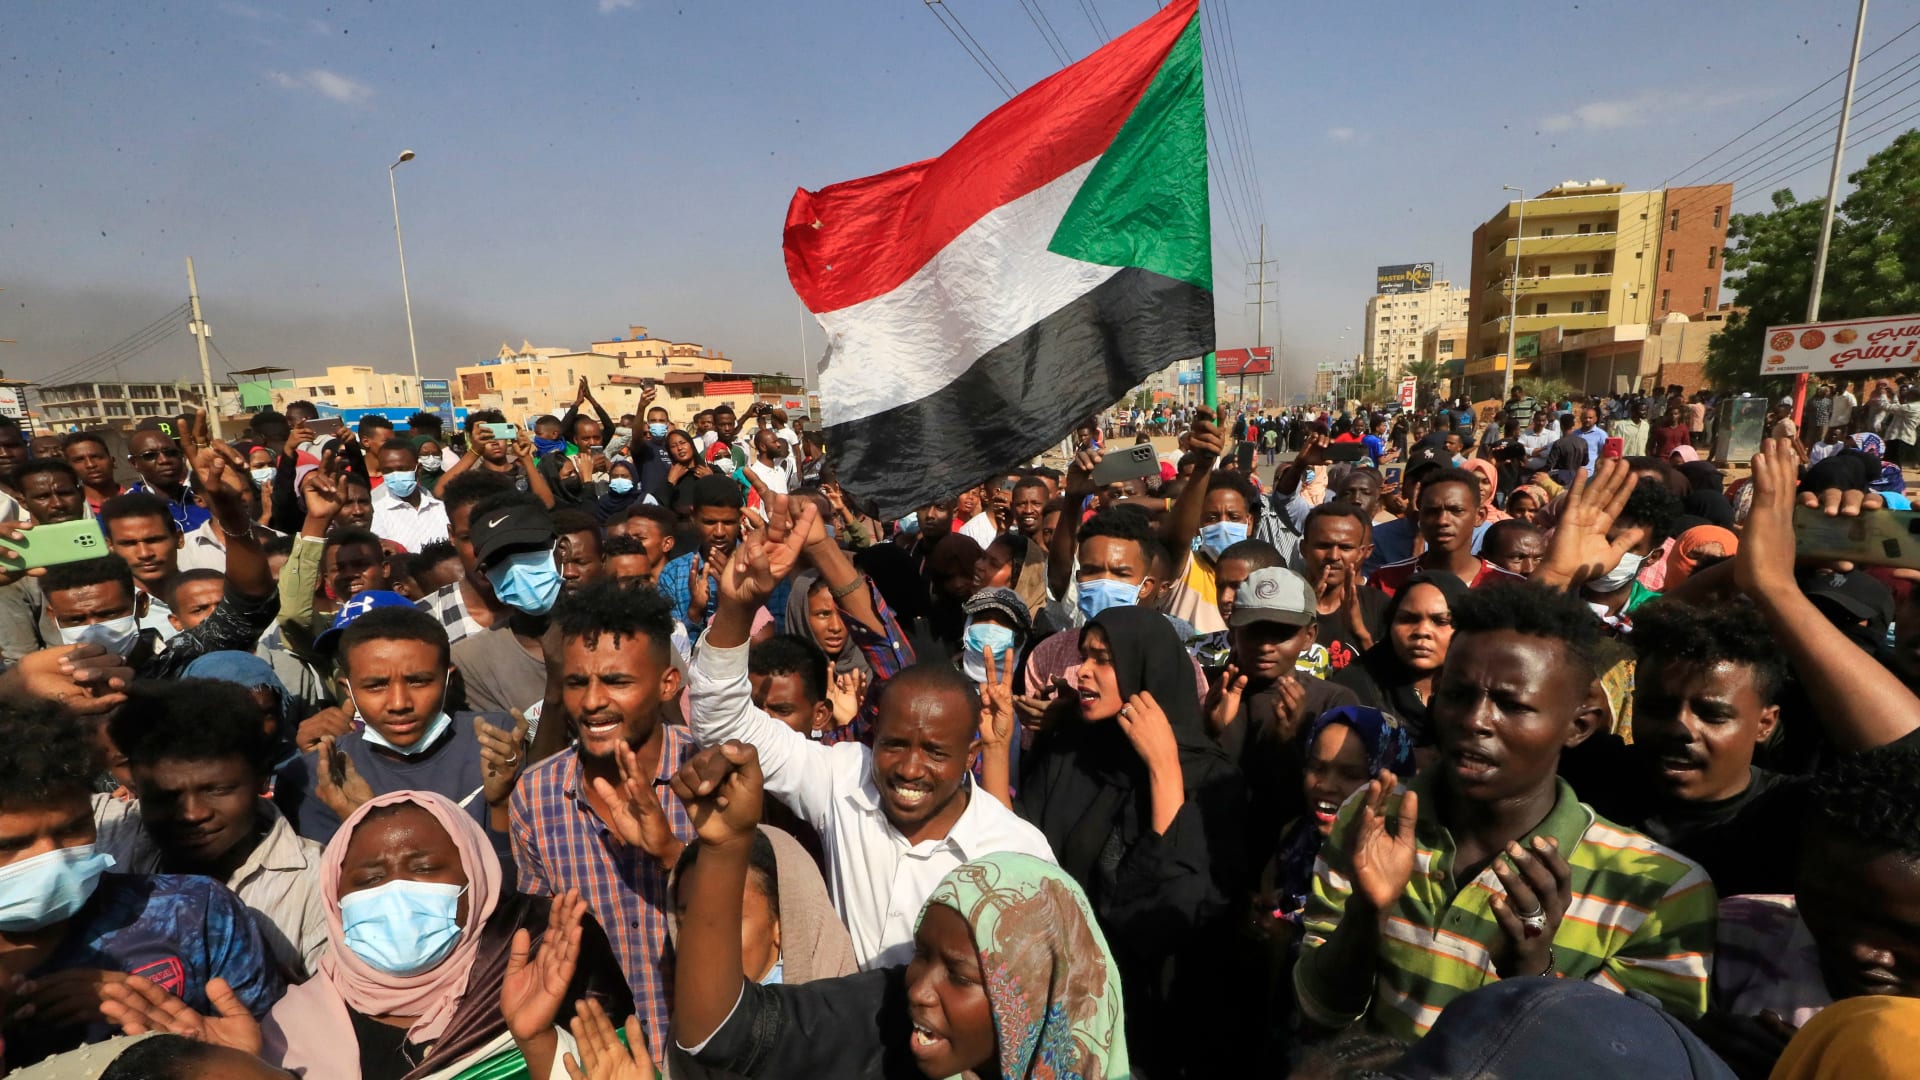 متظاهرون سودانيون يرفعون الأعلام الوطنية أثناء تجمعهم في شارع الستين بالعاصمة الخرطوم للتنديد باعتقالات الجيش لأعضاء الحكومة في 25 أكتوبر/ تشرين الأول 2021.